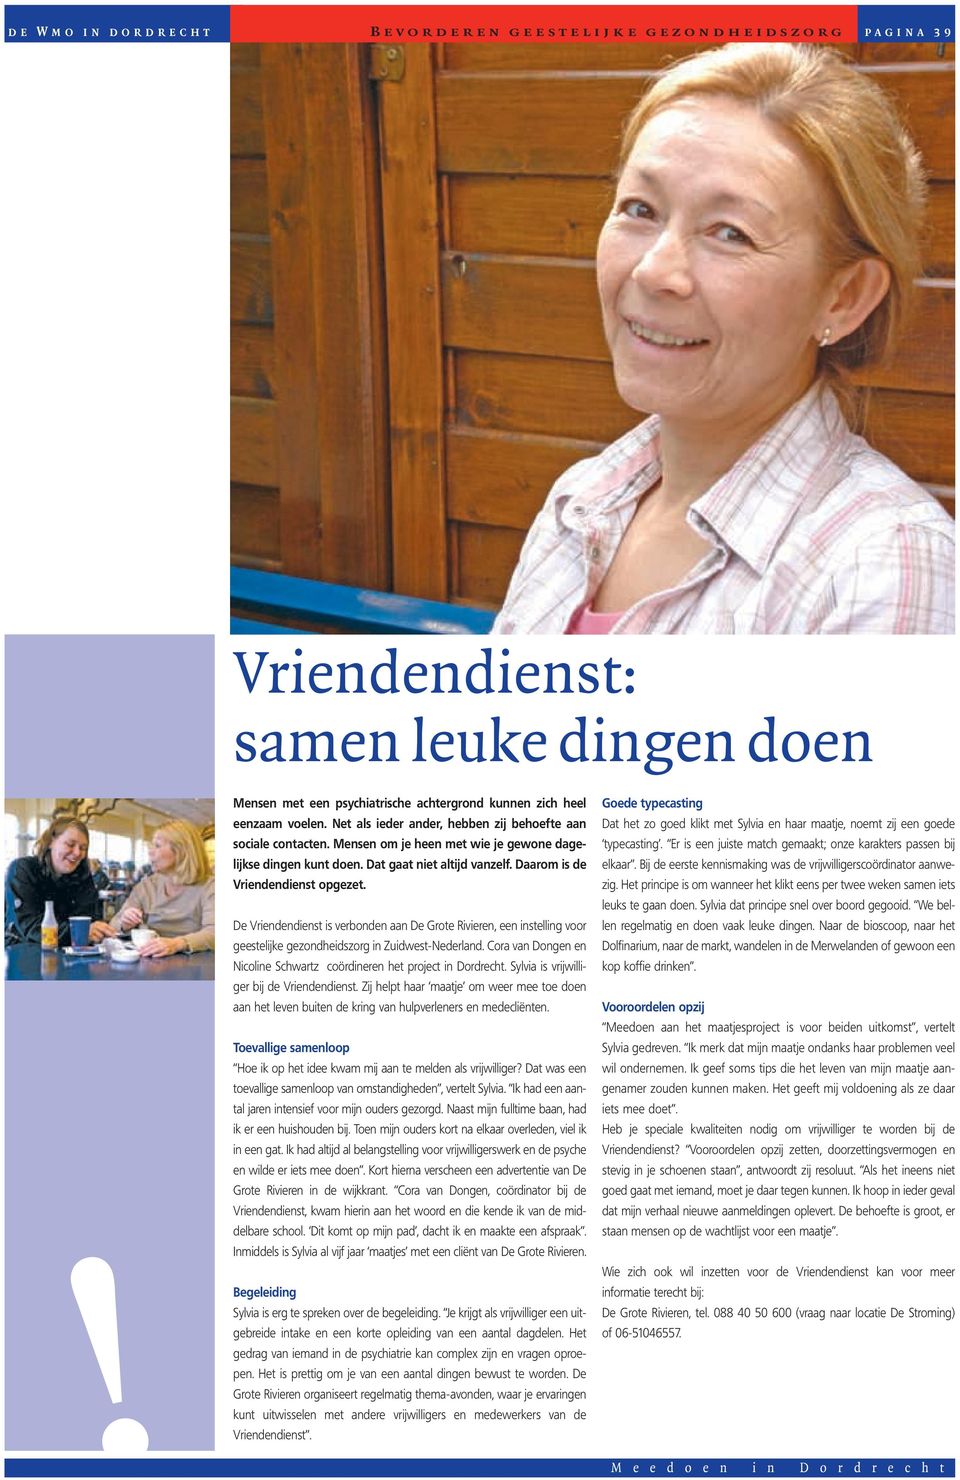 De Vriendendienst is verbonden aan De Grote Rivieren, een instelling voor geestelijke gezondheidszorg in Zuidwest-Nederland. Cora van Dongen en Nicoline Schwartz coördineren het project in Dordrecht.